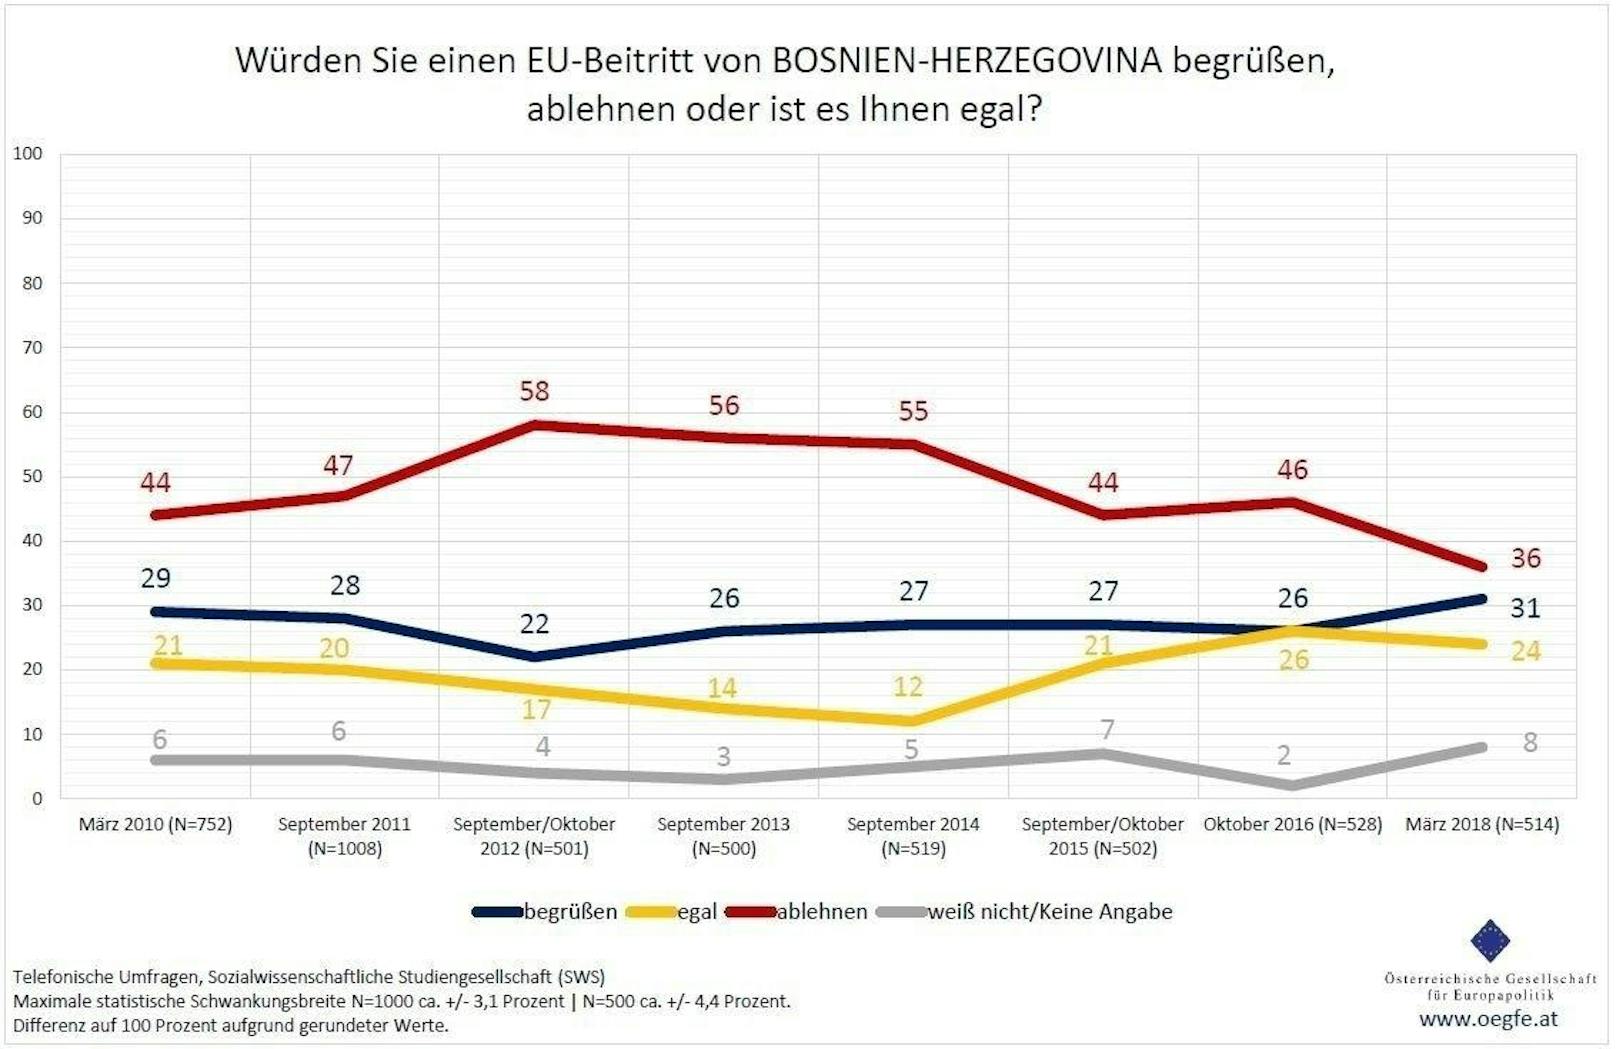 Einen EU-Beitritt von <b>Bosnien und Herzegowina</b> begrüßen 31 Prozent der Befragten, 36 Prozent lehnen ihn ab, 24 Prozent ist es - nach eigenen Angaben - egal, ob das Land EU-Mitglied wird.